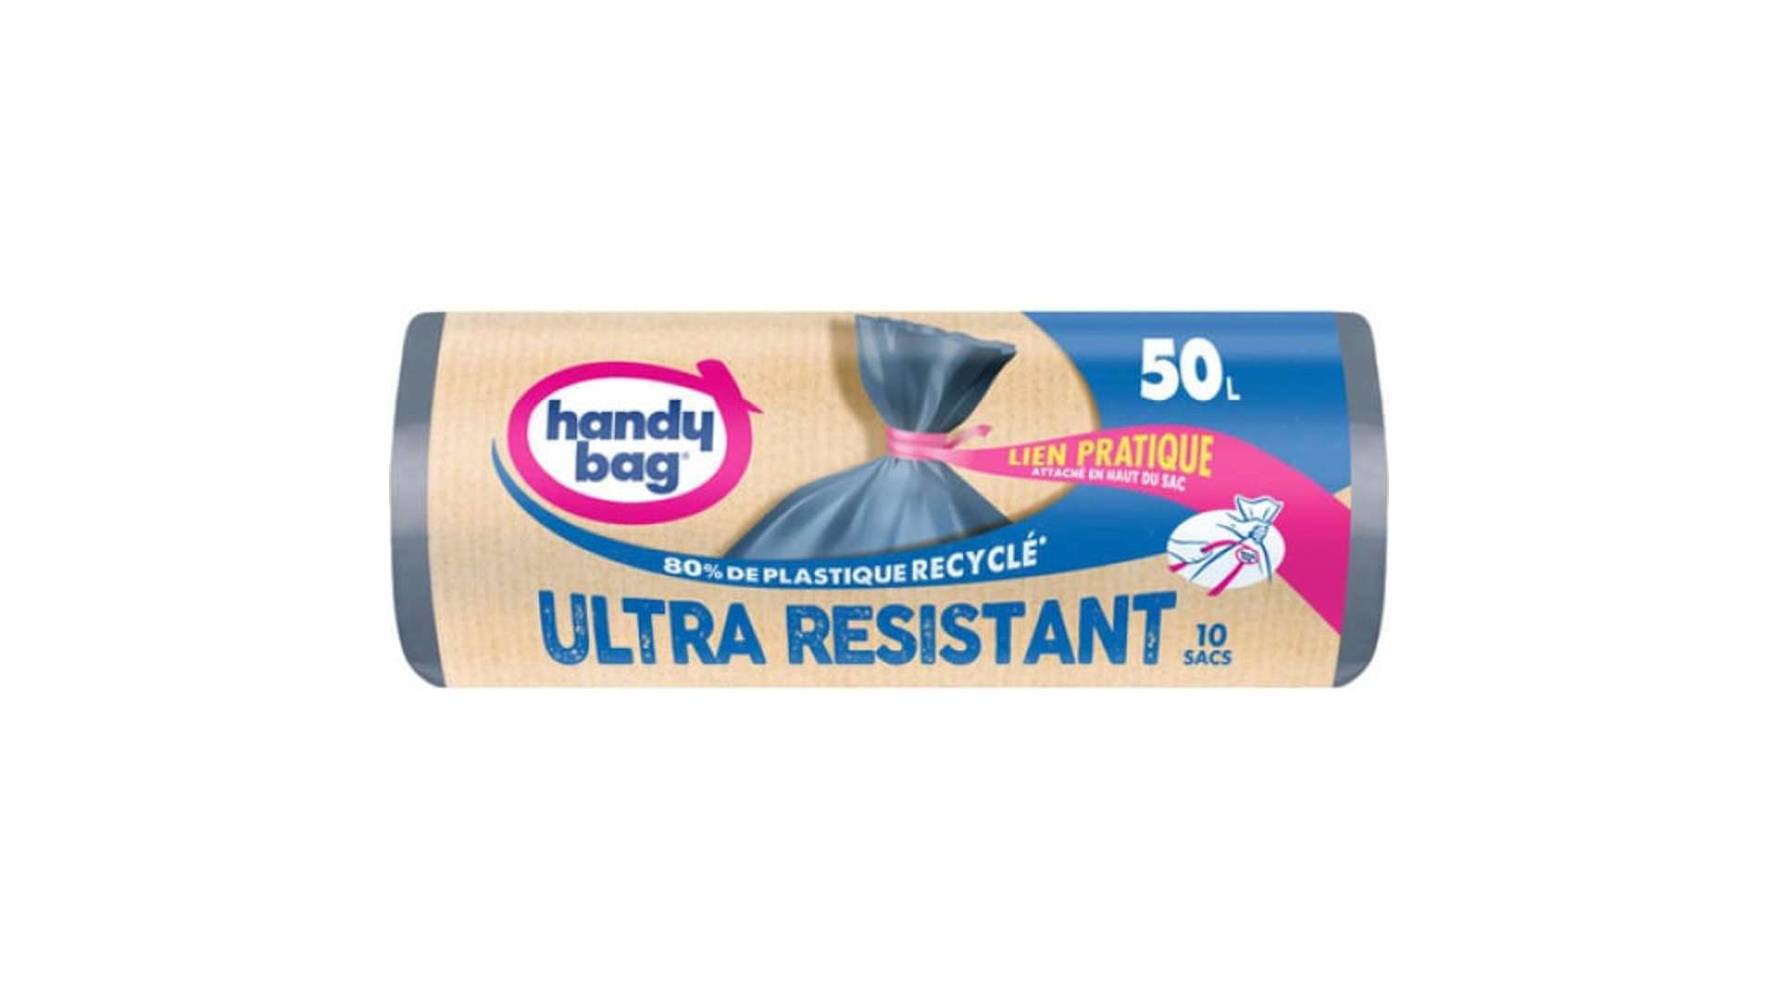 Handy Bag - Sacs poubelle à lien pratique ultra resistant (10 pièces)